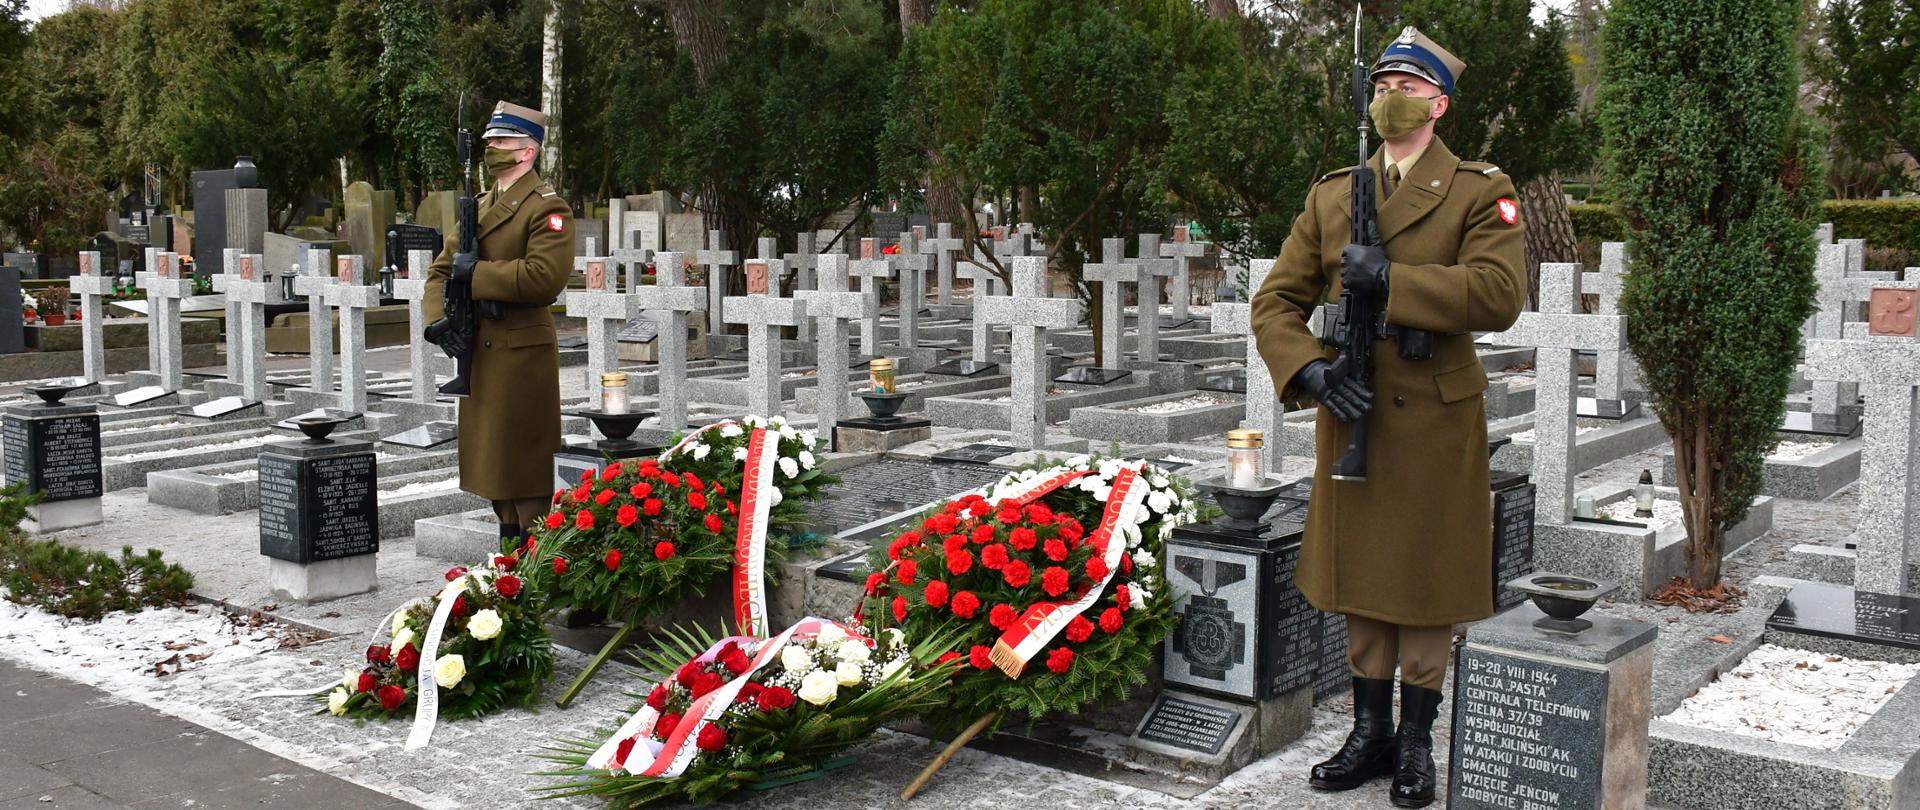 Zdjęcie przedstawia fragment wyremontowanej kwatery wojennej Zgrupowania AK „Gurt”, znajdującej się na warszawskim Cmentarzu Wojskowym na Powązkach. Przy mogile wartę pełnią żołnierze Wojska Polskiego, a tuż przed pomnikiem lezą biało-czerwone wieńce.